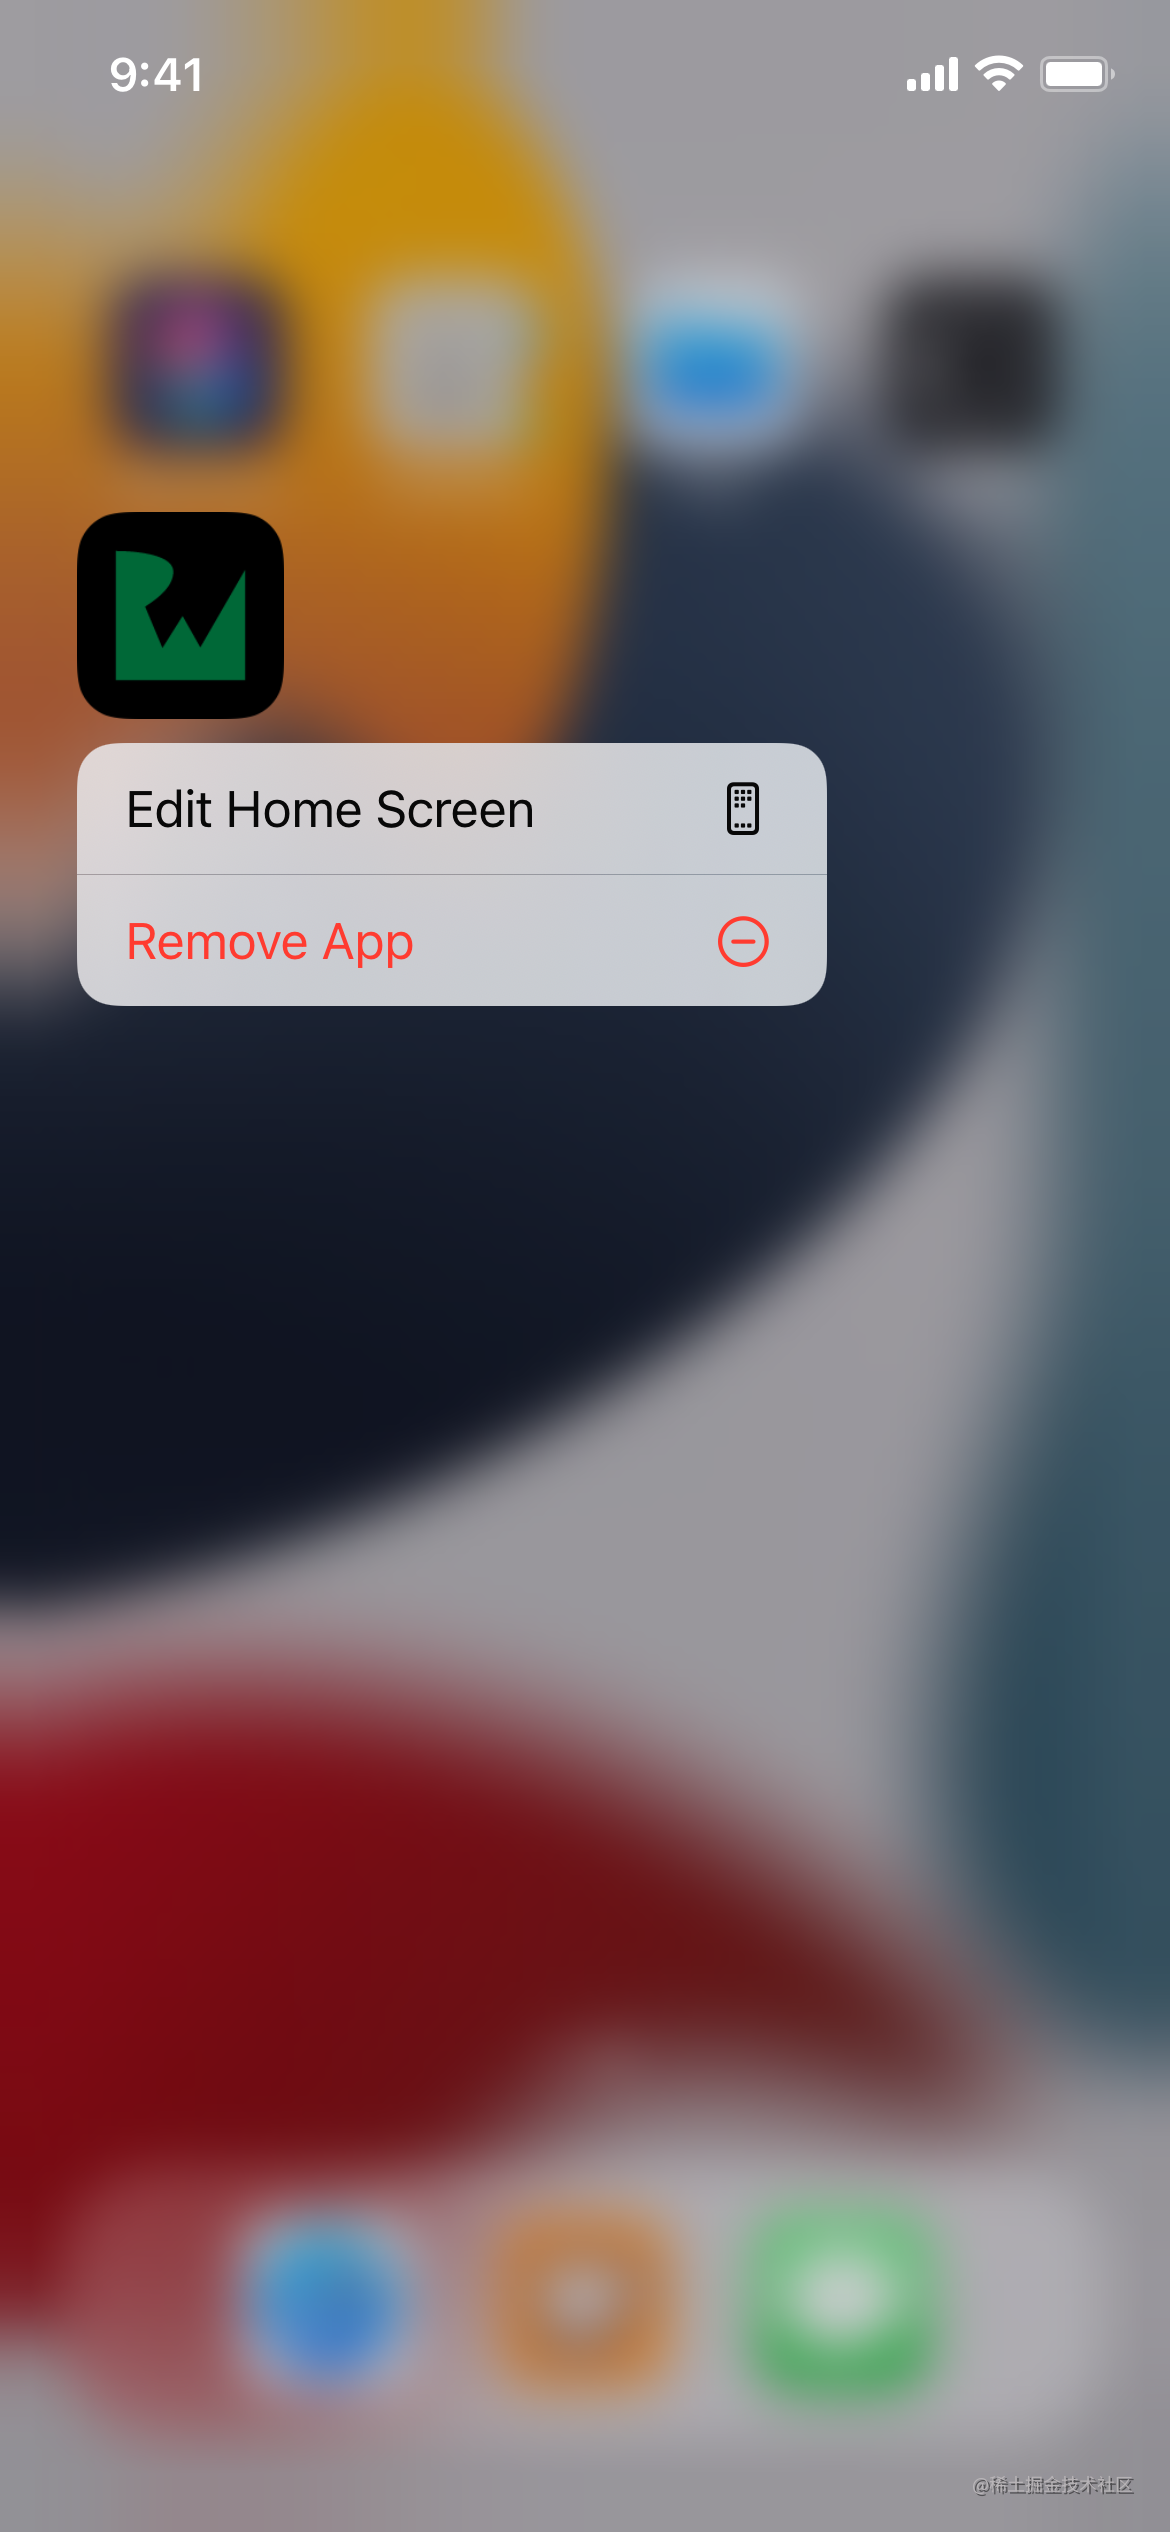 홈 화면에서 "노트 버디" 앱 아이콘을 길게 누르면 나타나는 메뉴에는 홈 화면을 "편집"하거나 앱을 "삭제"하는 옵션이 있습니다.